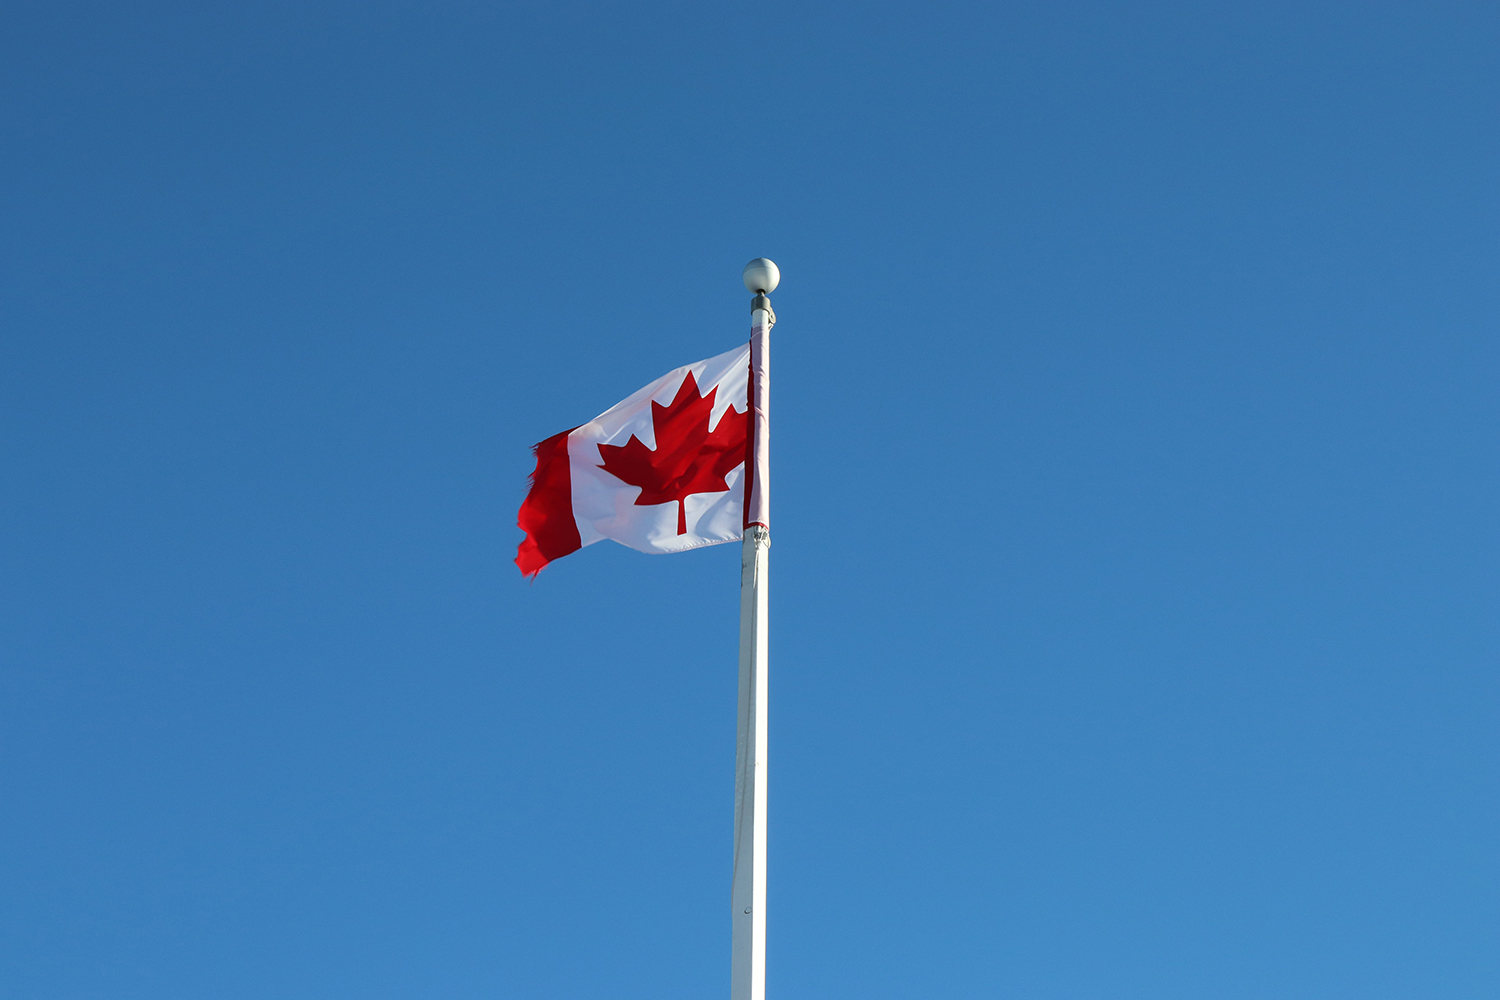 Journée importante pour la santé mondiale : le gouvernement du Canada, chef de file des efforts pour éradiquer la COVID-19